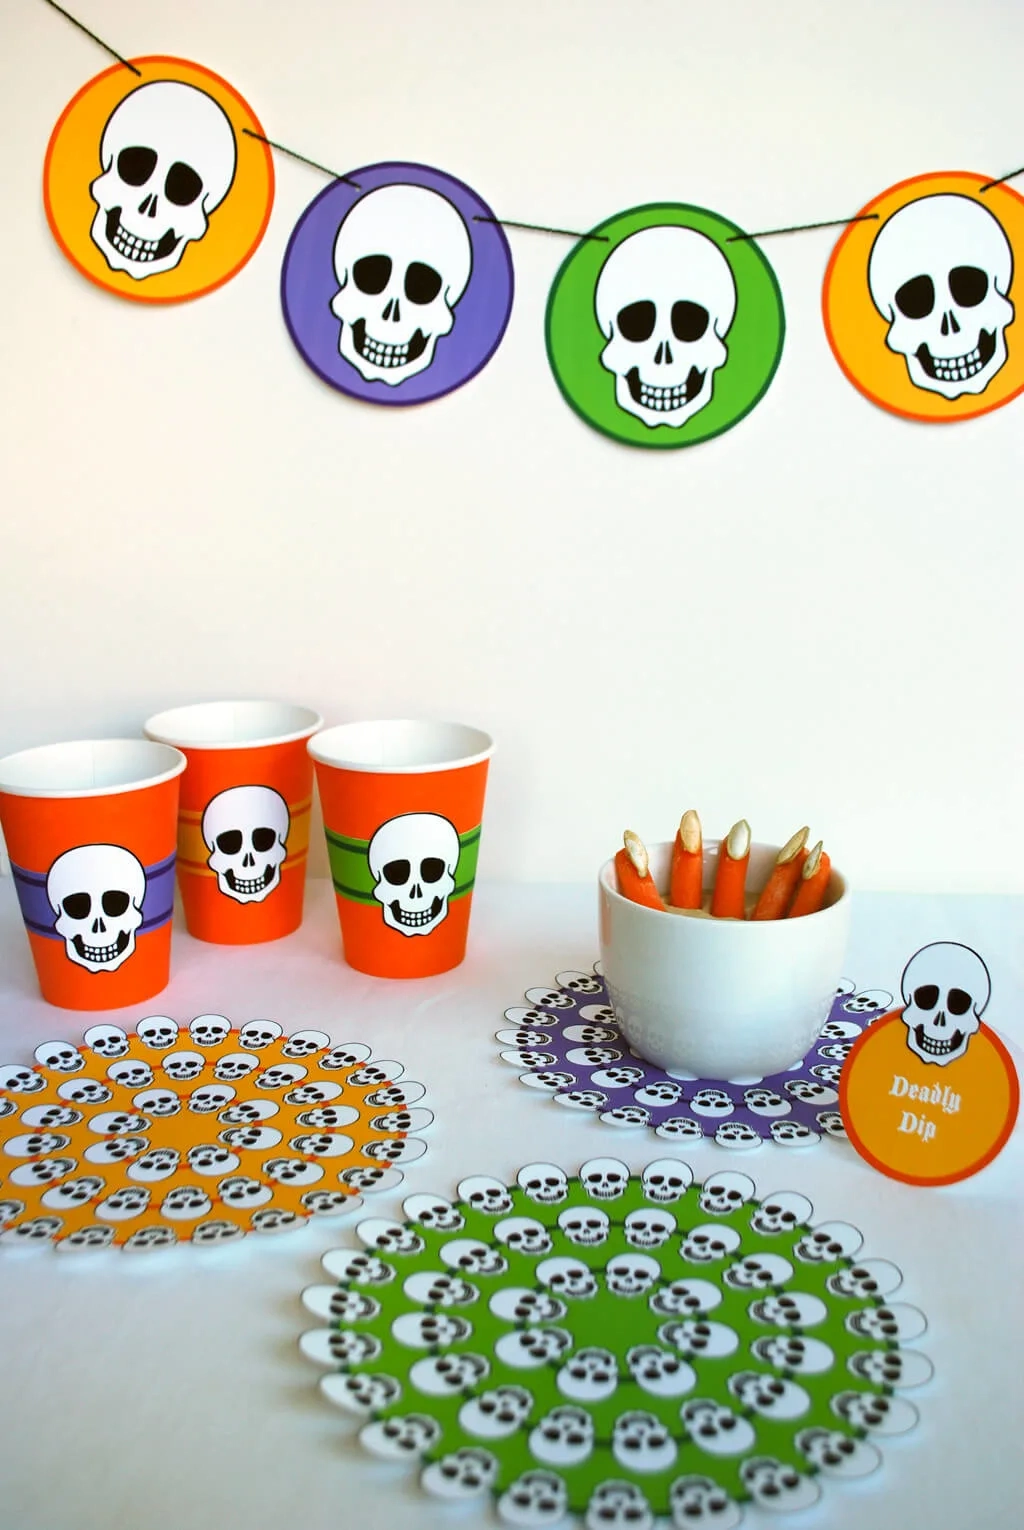 Skeleton Free Printable Halloween Party Decorations - Merriment Design for Free Printable Halloween Party Decorations